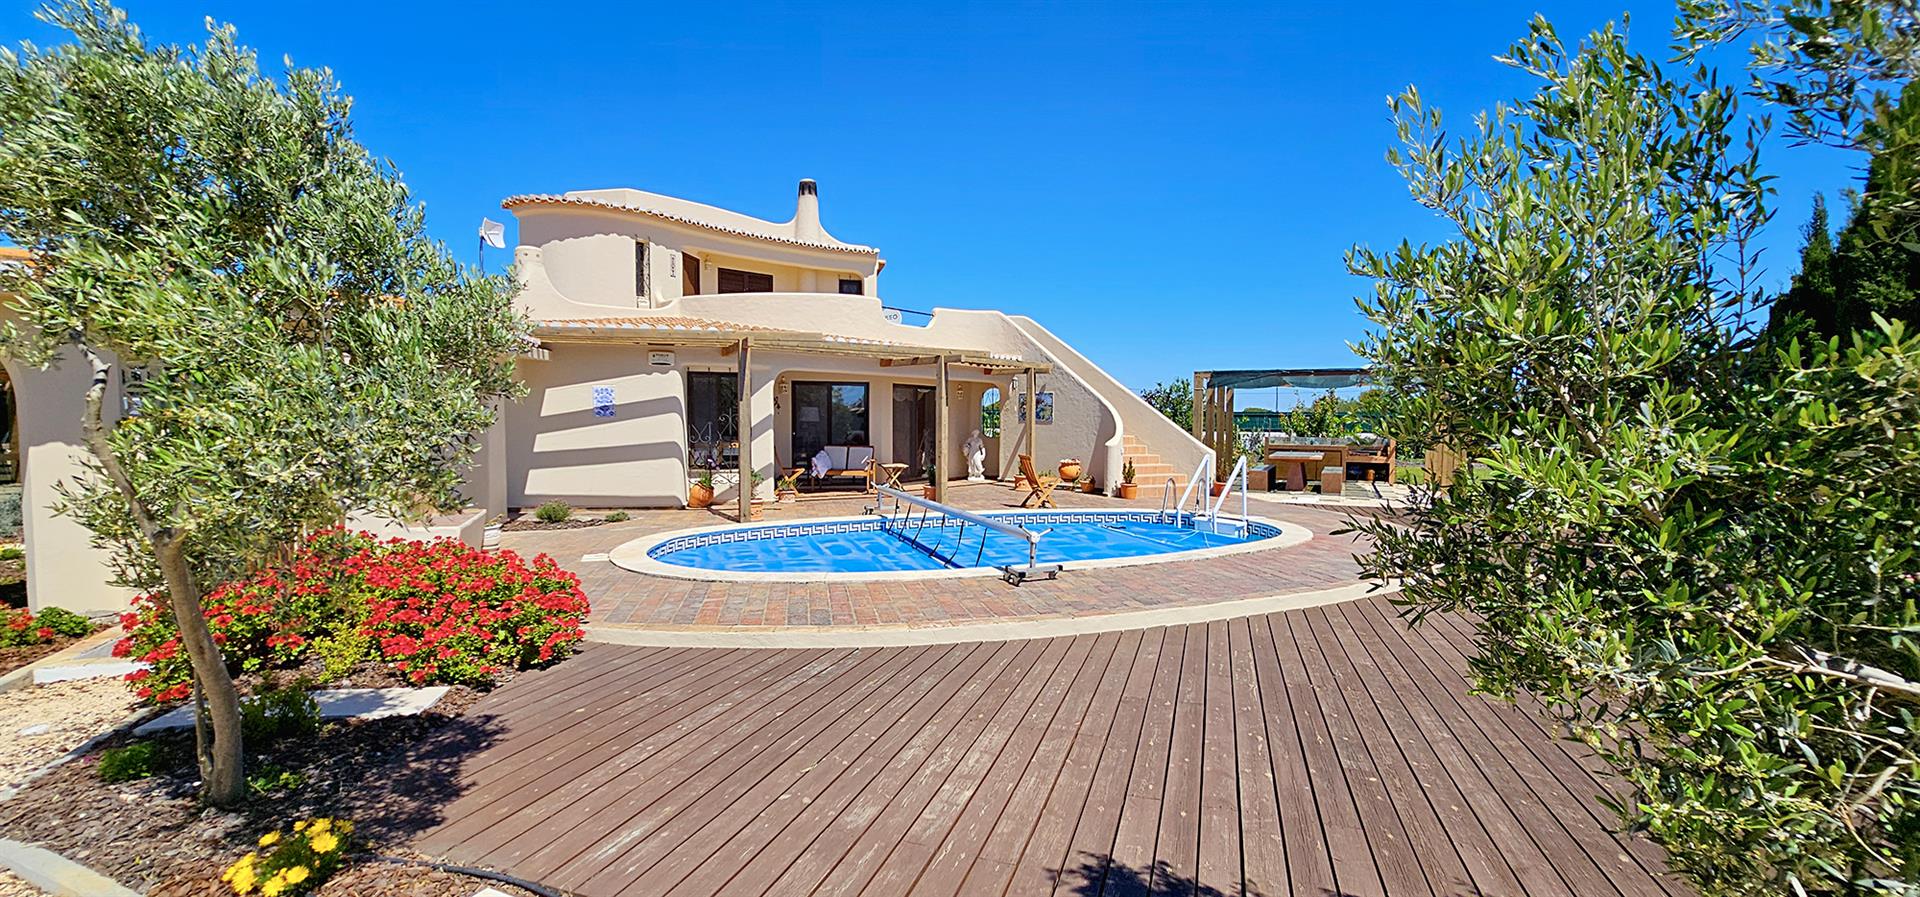 Willkommen in Ihrem zukünftigen Zuhause, der schönen Algarve